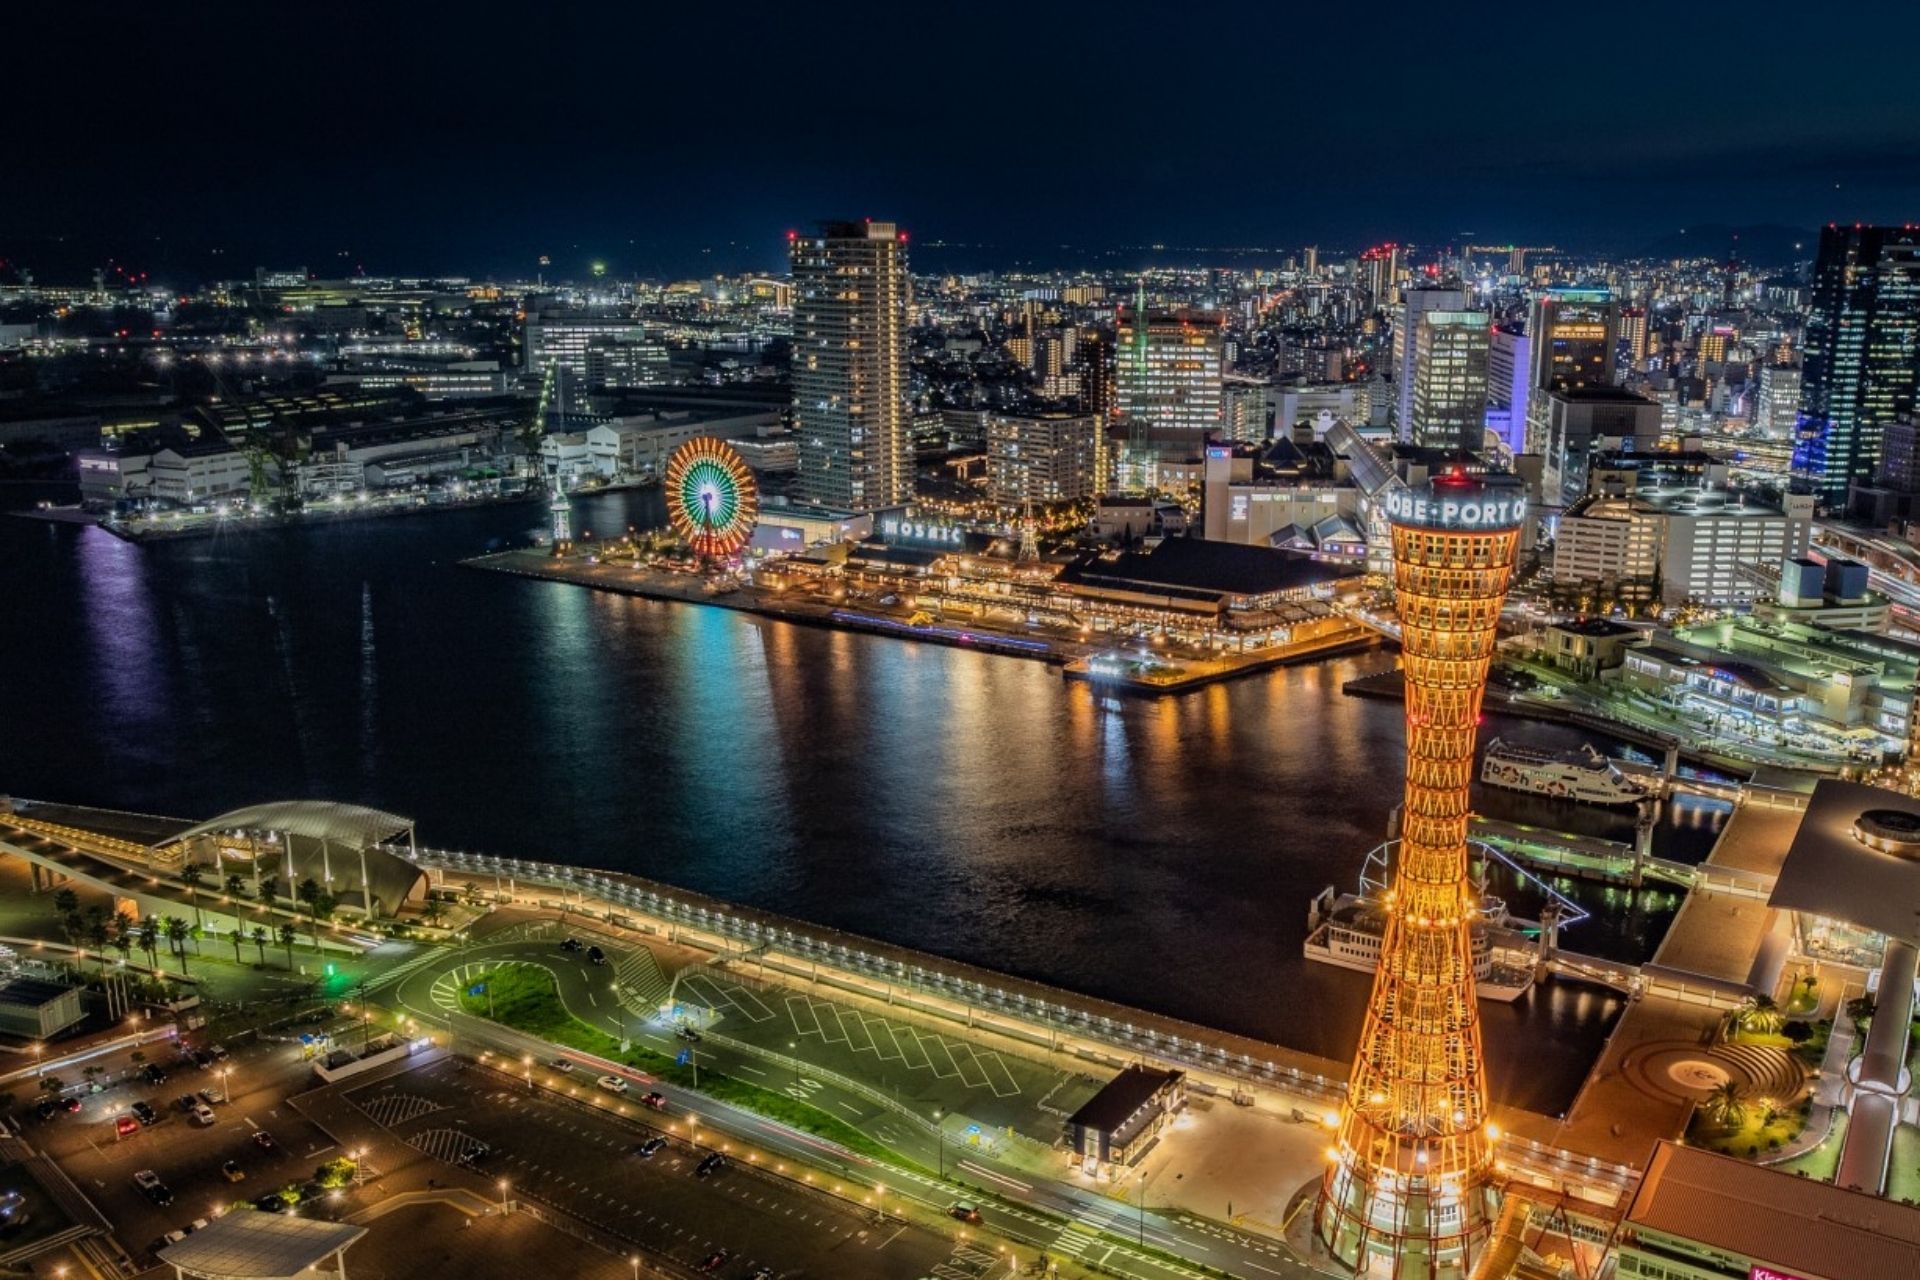 Kobe Night View